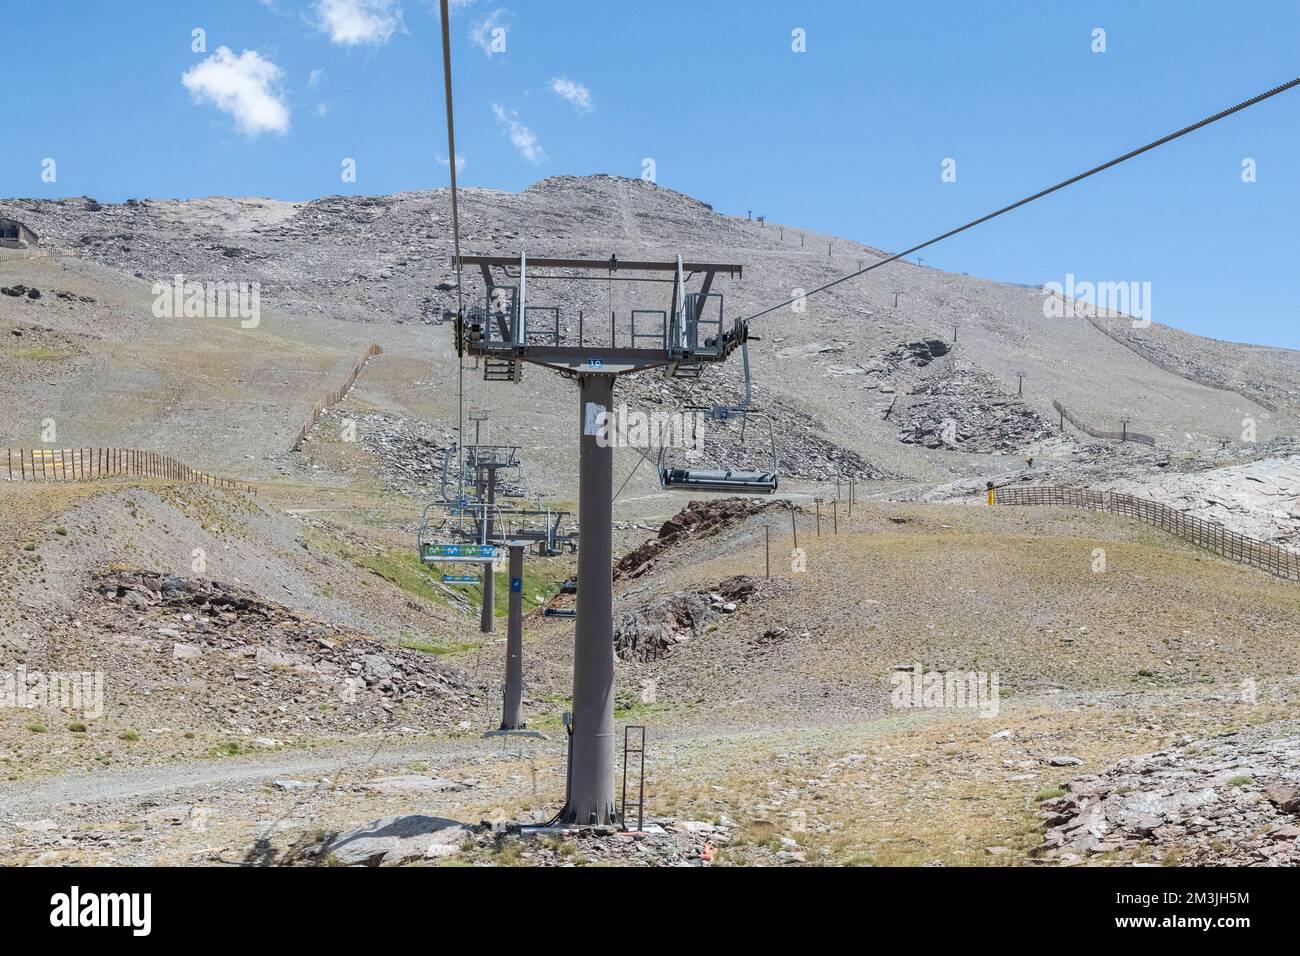 Le système de remontée mécanique dans la chaîne de montagnes de la Sierra Nevada en Andalousie, Espagne Banque D'Images